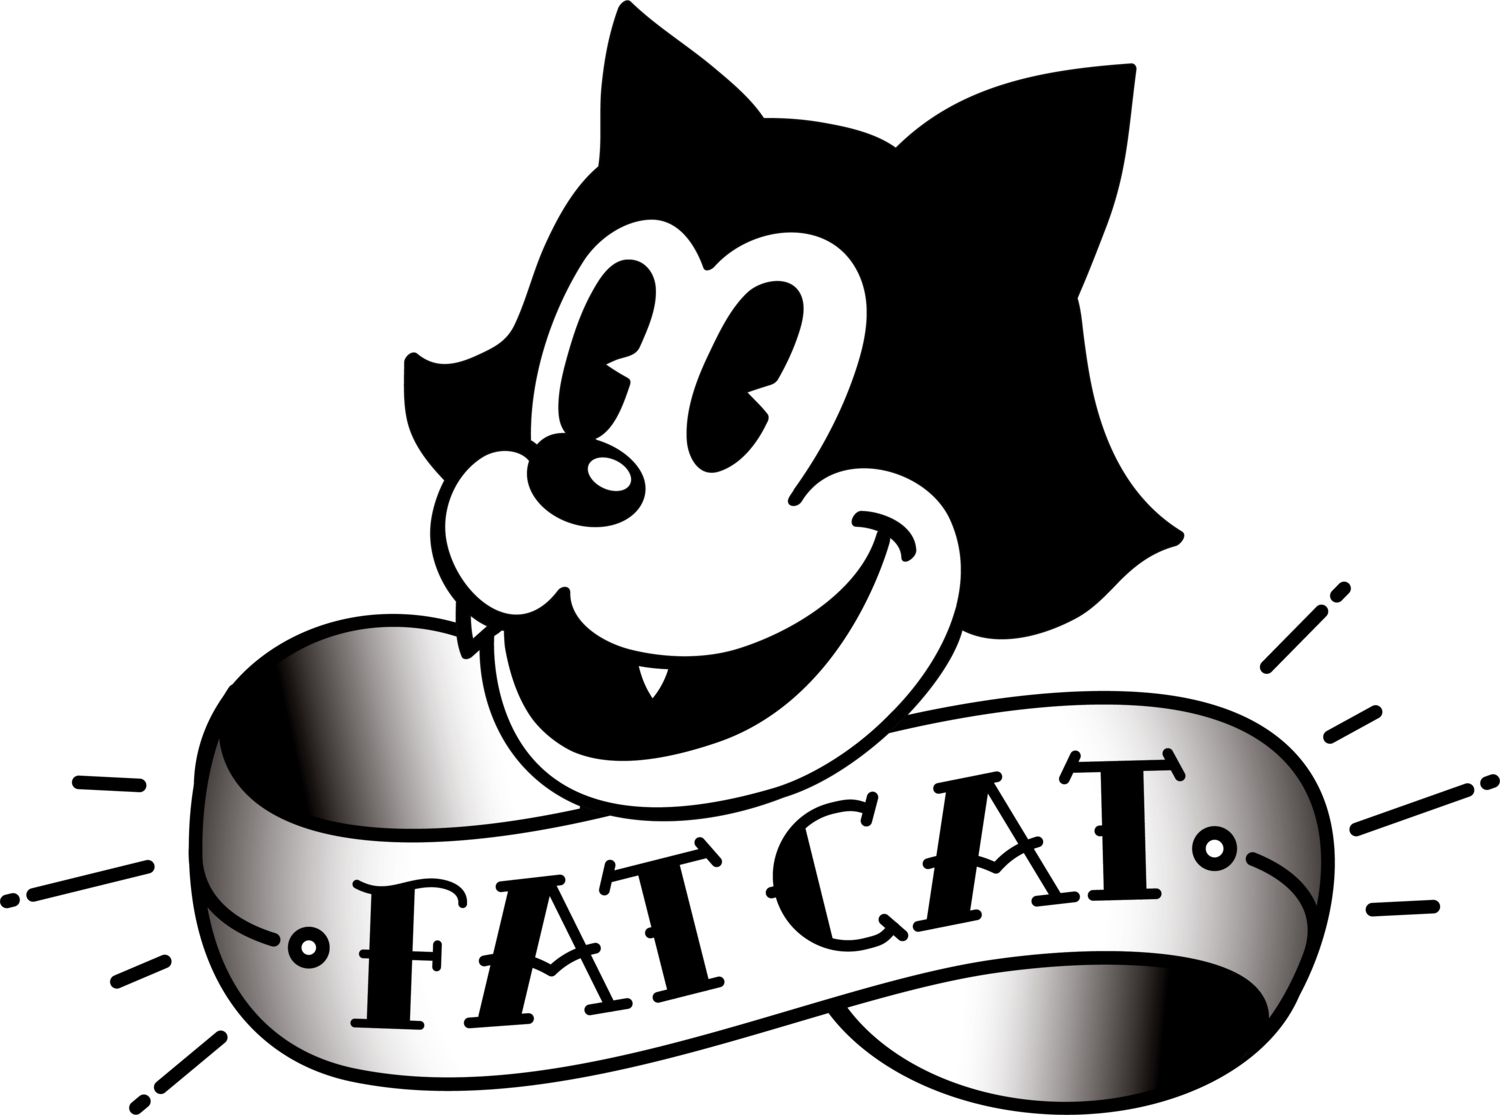 www.fatcatskincare.com